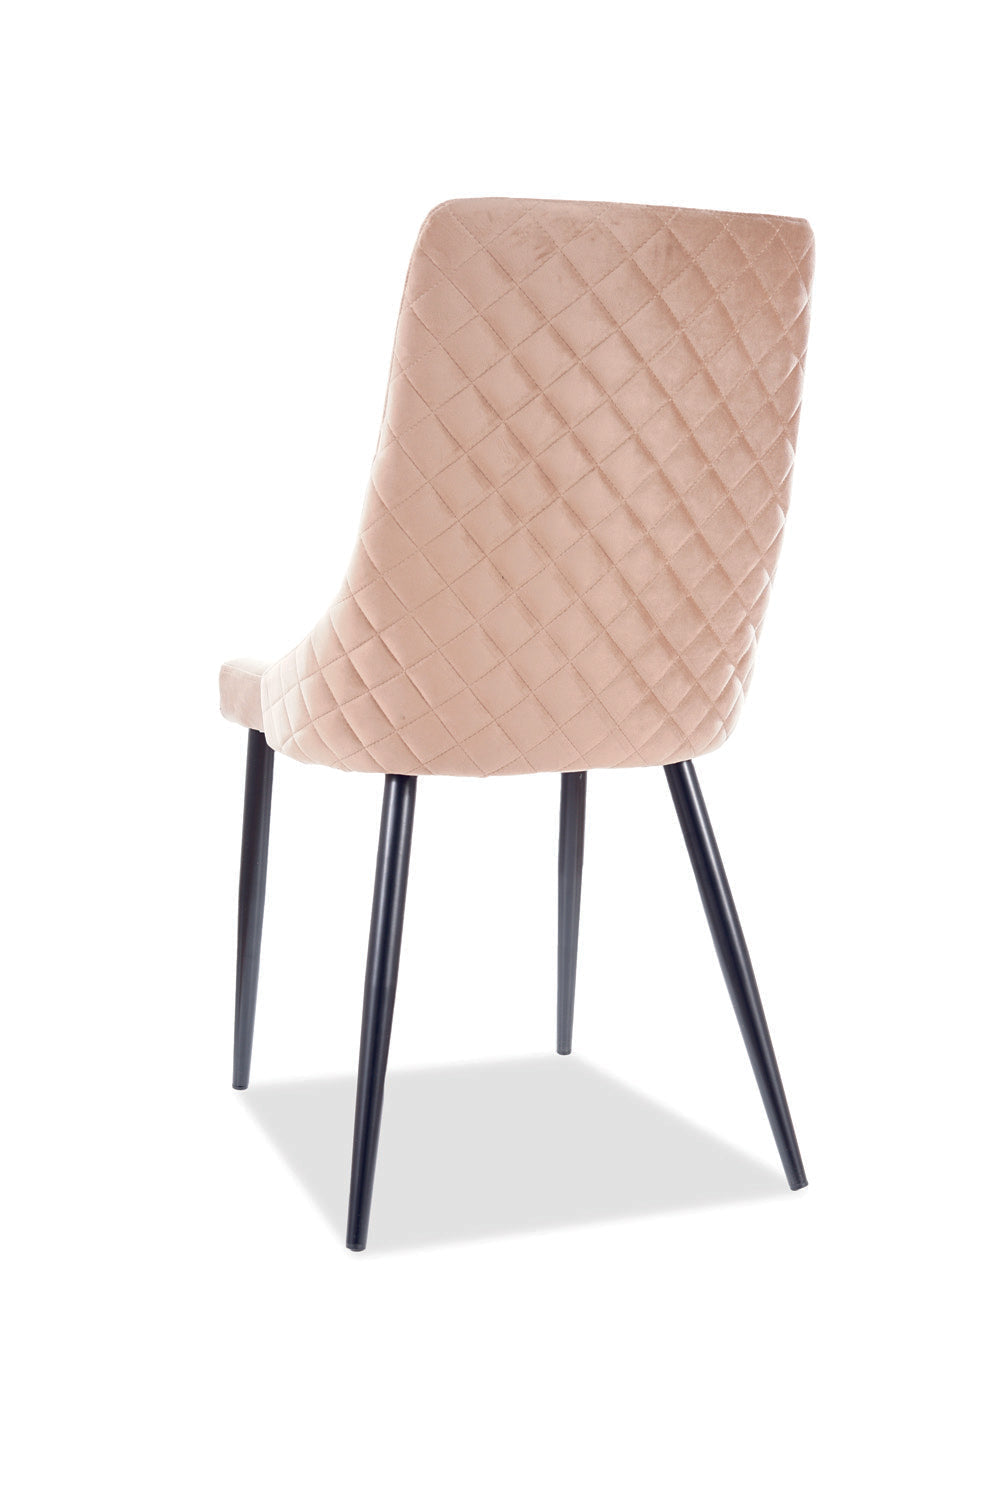 Temperance szék (barna) - Marco Mobili Bútoráruház - Szék